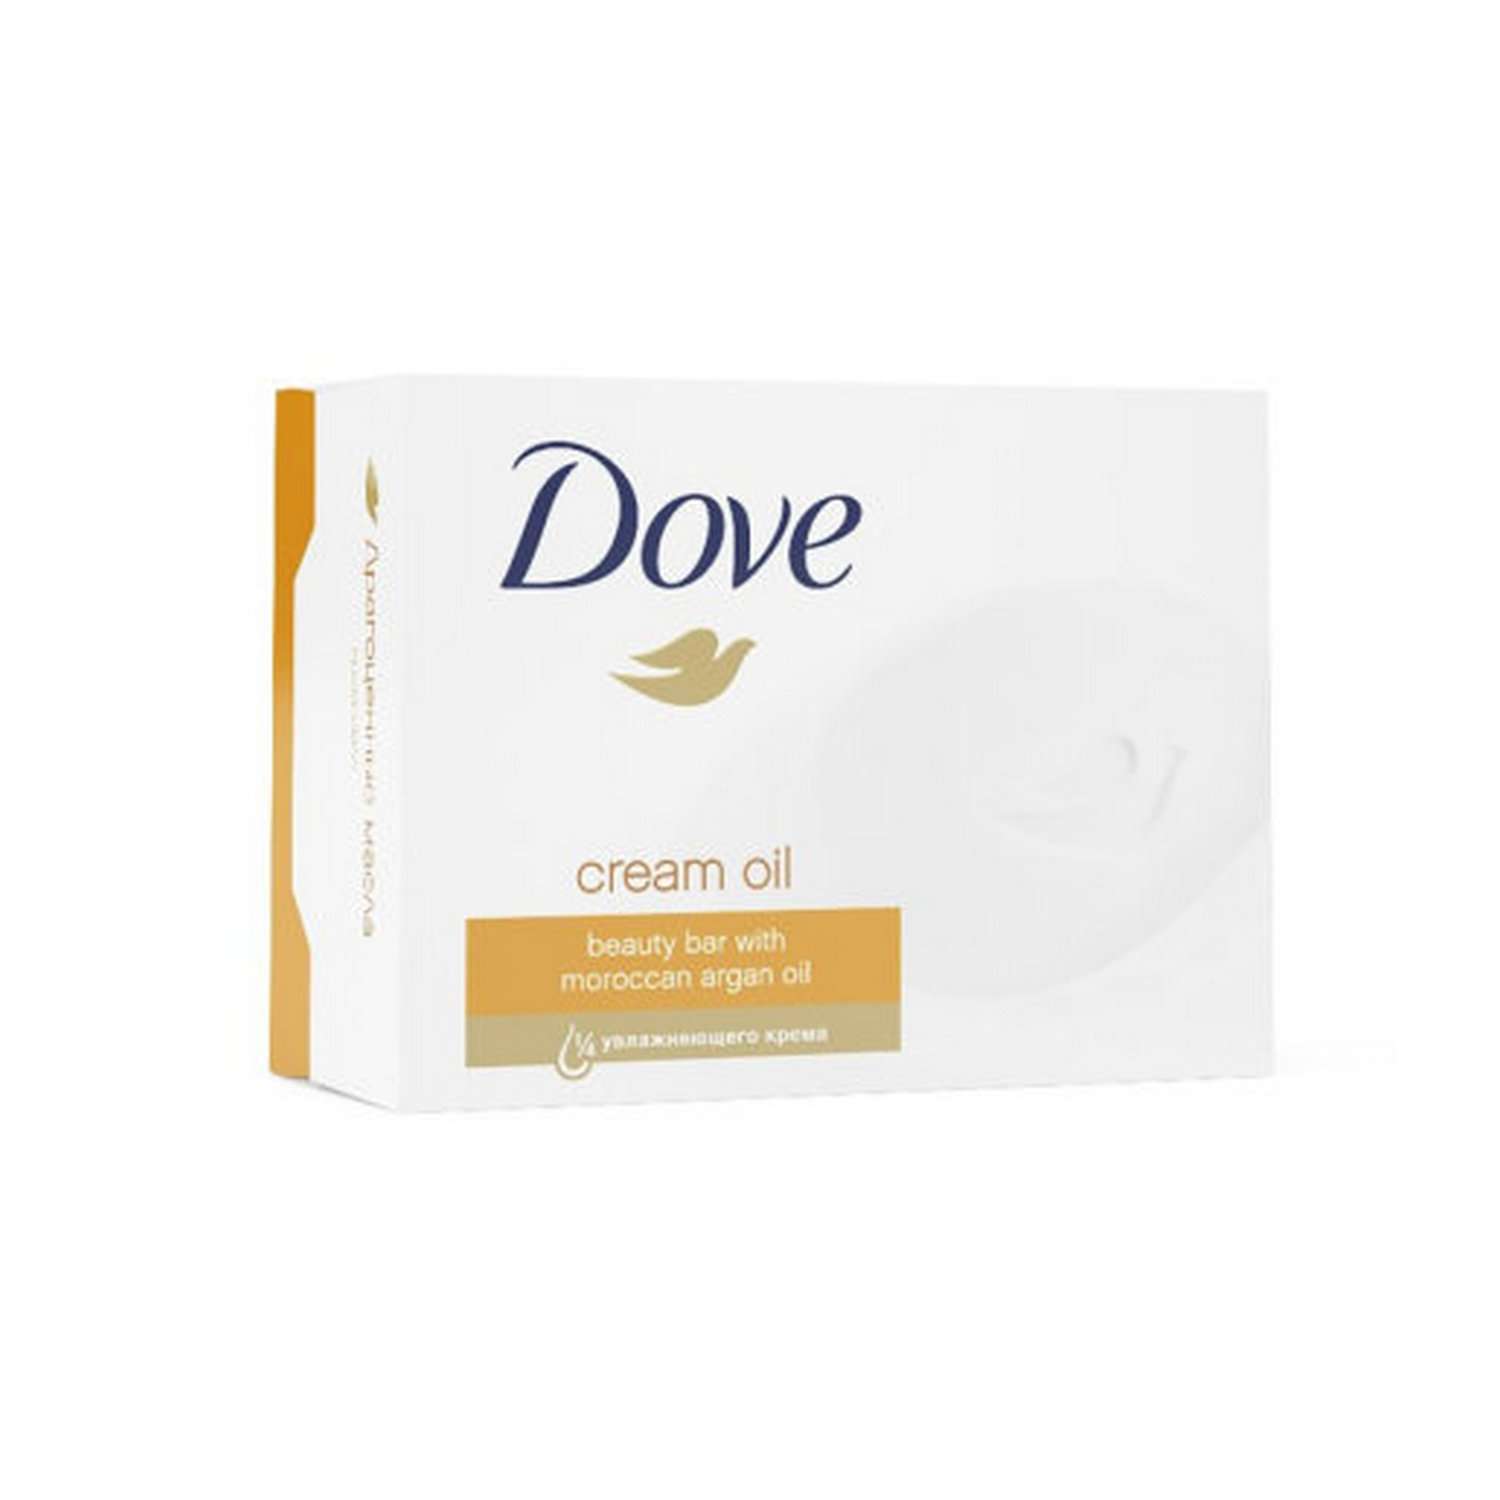 Dove мыло драгоценные масла. Мыло дав отзывы